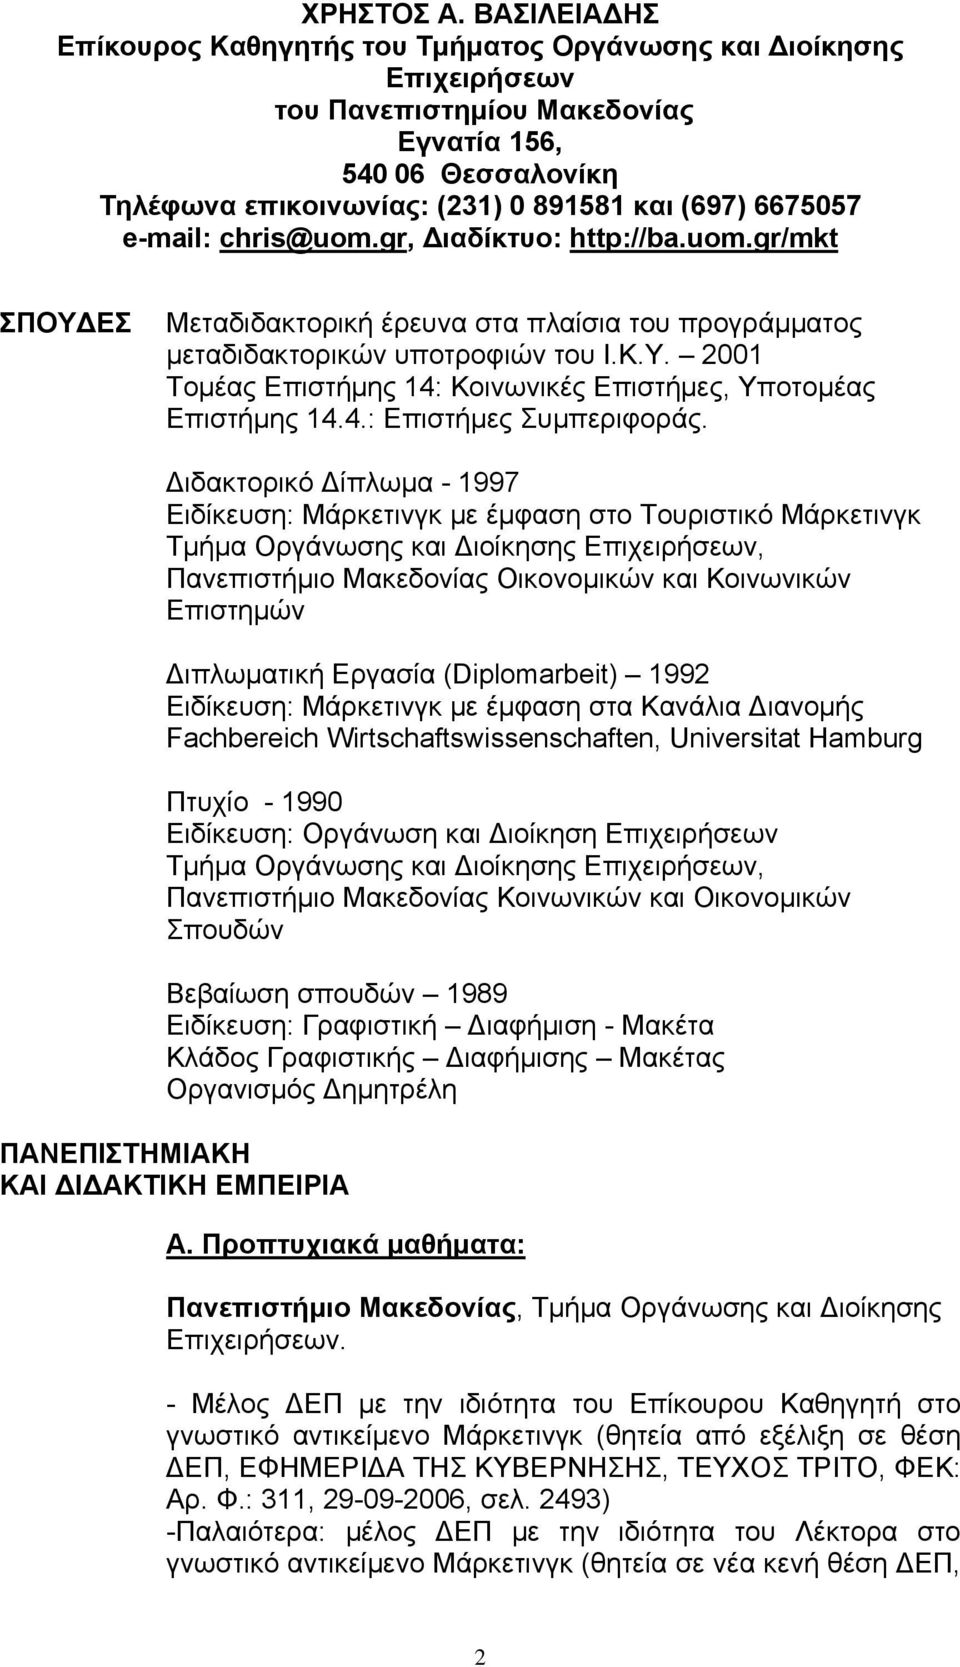 e-mail: chris@uom.gr, Διαδίκτυο: http://ba.uom.gr/mkt ΣΠΟΥΔΕΣ Μεταδιδακτορική έρευνα στα πλαίσια του προγράμματος μεταδιδακτορικών υποτροφιών του Ι.Κ.Υ. 2001 Τομέας Επιστήμης 14: Κοινωνικές Επιστήμες, Υποτομέας Επιστήμης 14.